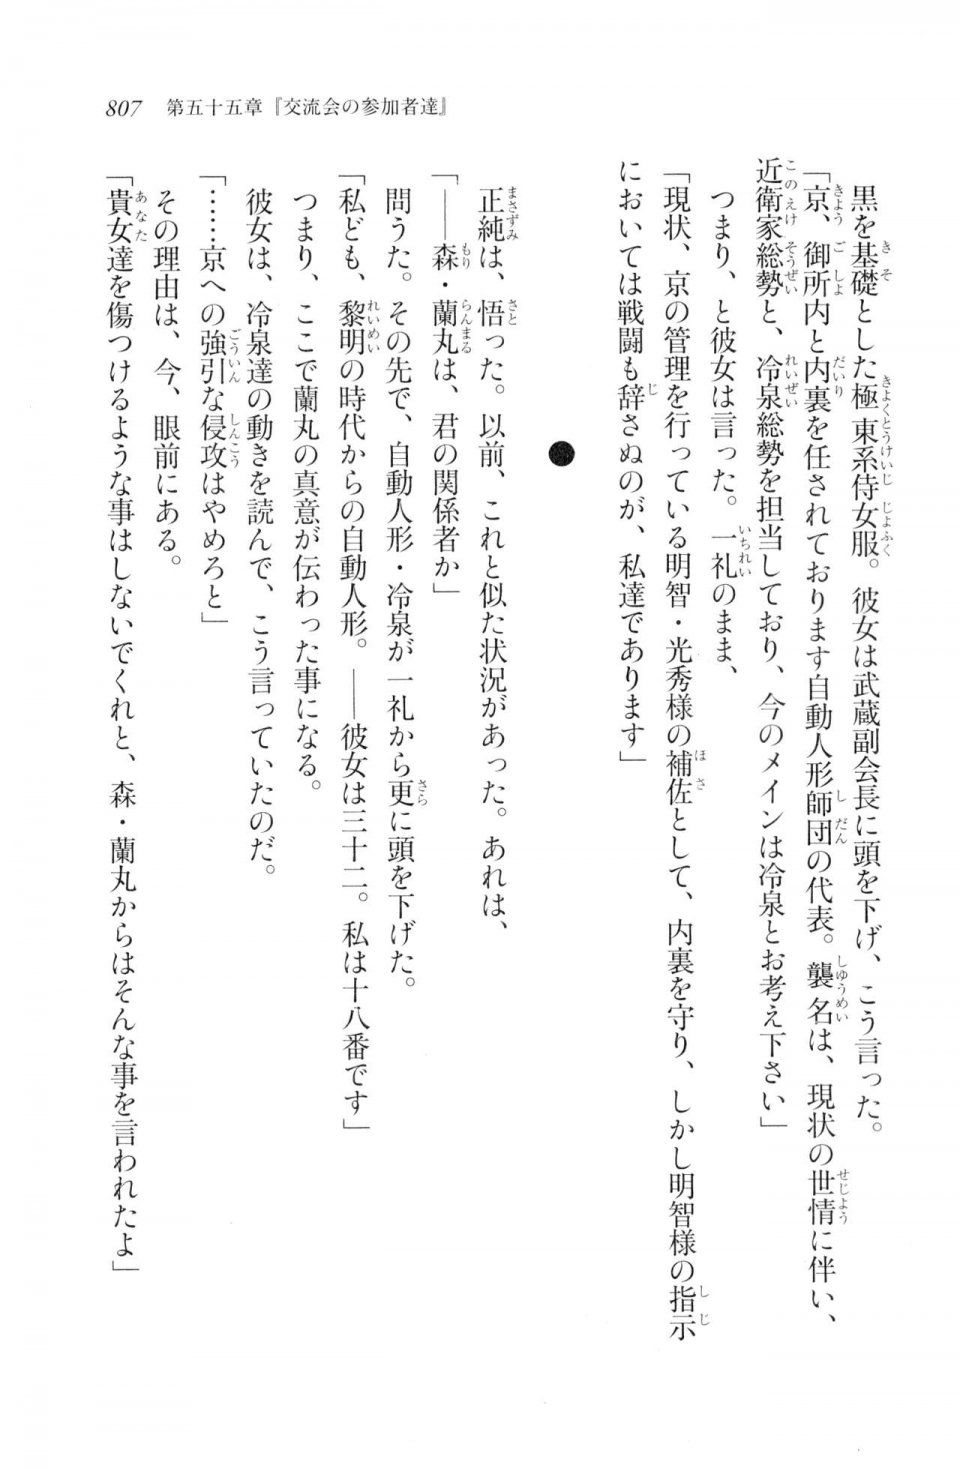 Kyoukai Senjou no Horizon LN Vol 20(8B) - Photo #807